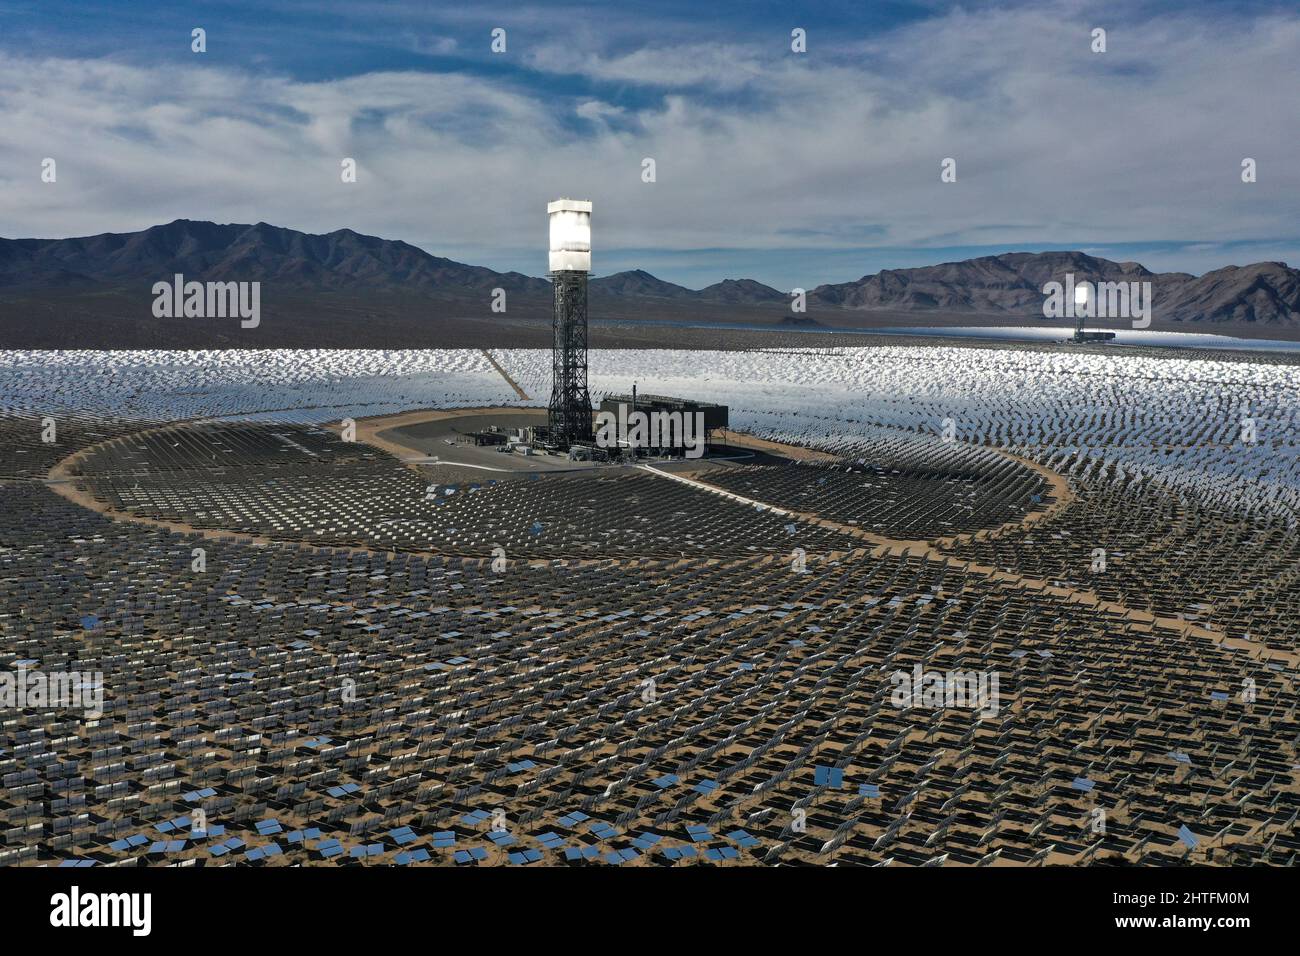 Heliostat-Spiegel reflektieren das Sonnenlicht auf einen Kessel, der auf  Solarkraftwerken am Ivanpah Solar Electric Generating System, dem größten  solarthermischen Kraftwerk der Welt, in der Mojave-Wüste bei Nipton,  Kalifornien, USA, montiert ist, 27.